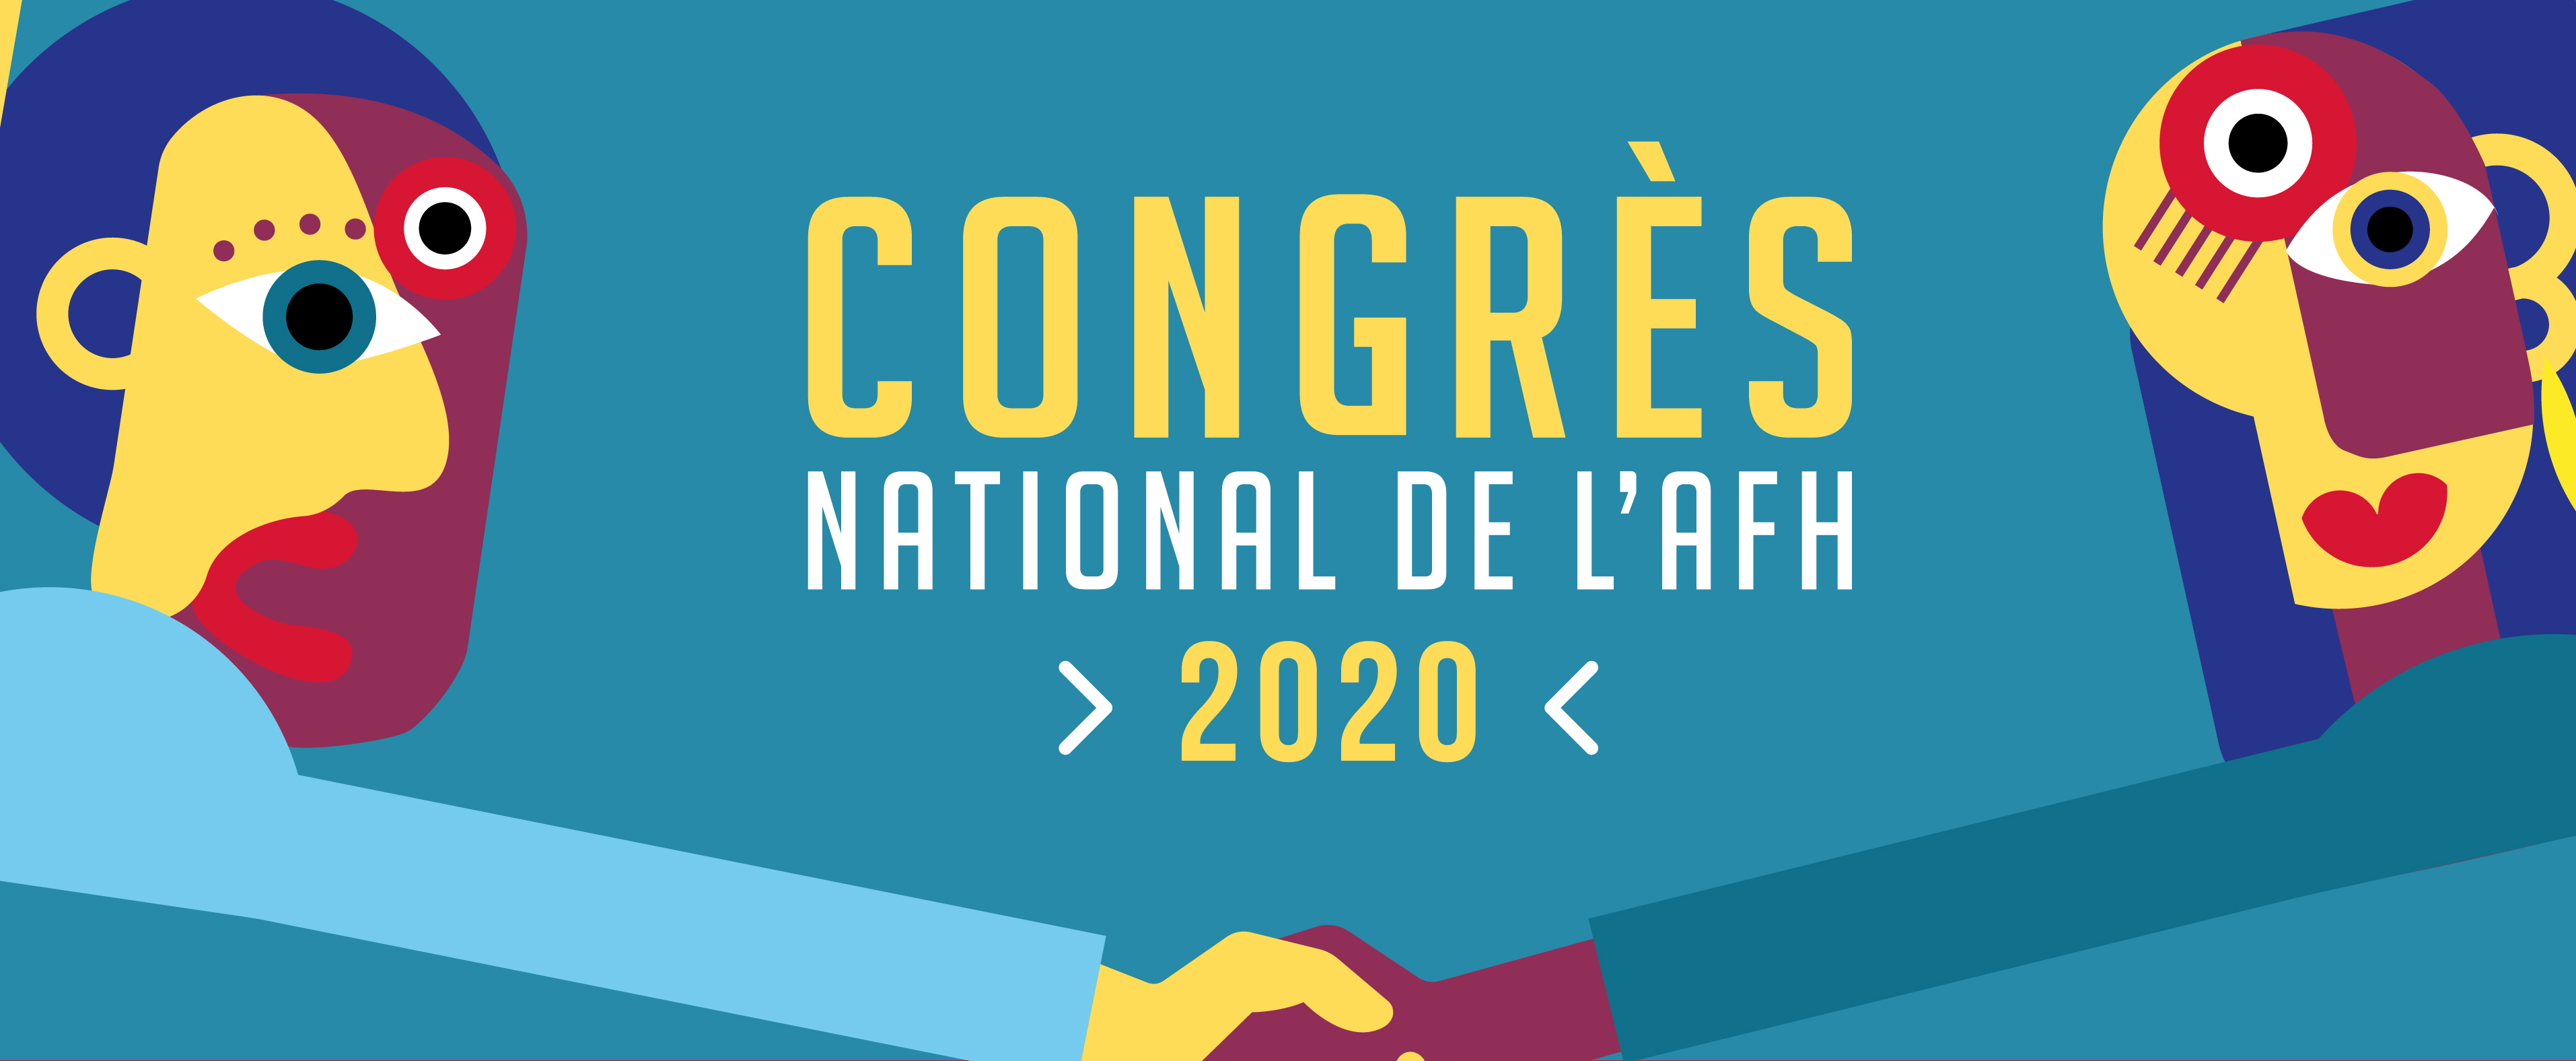 Congrès national de l’AFH 2020